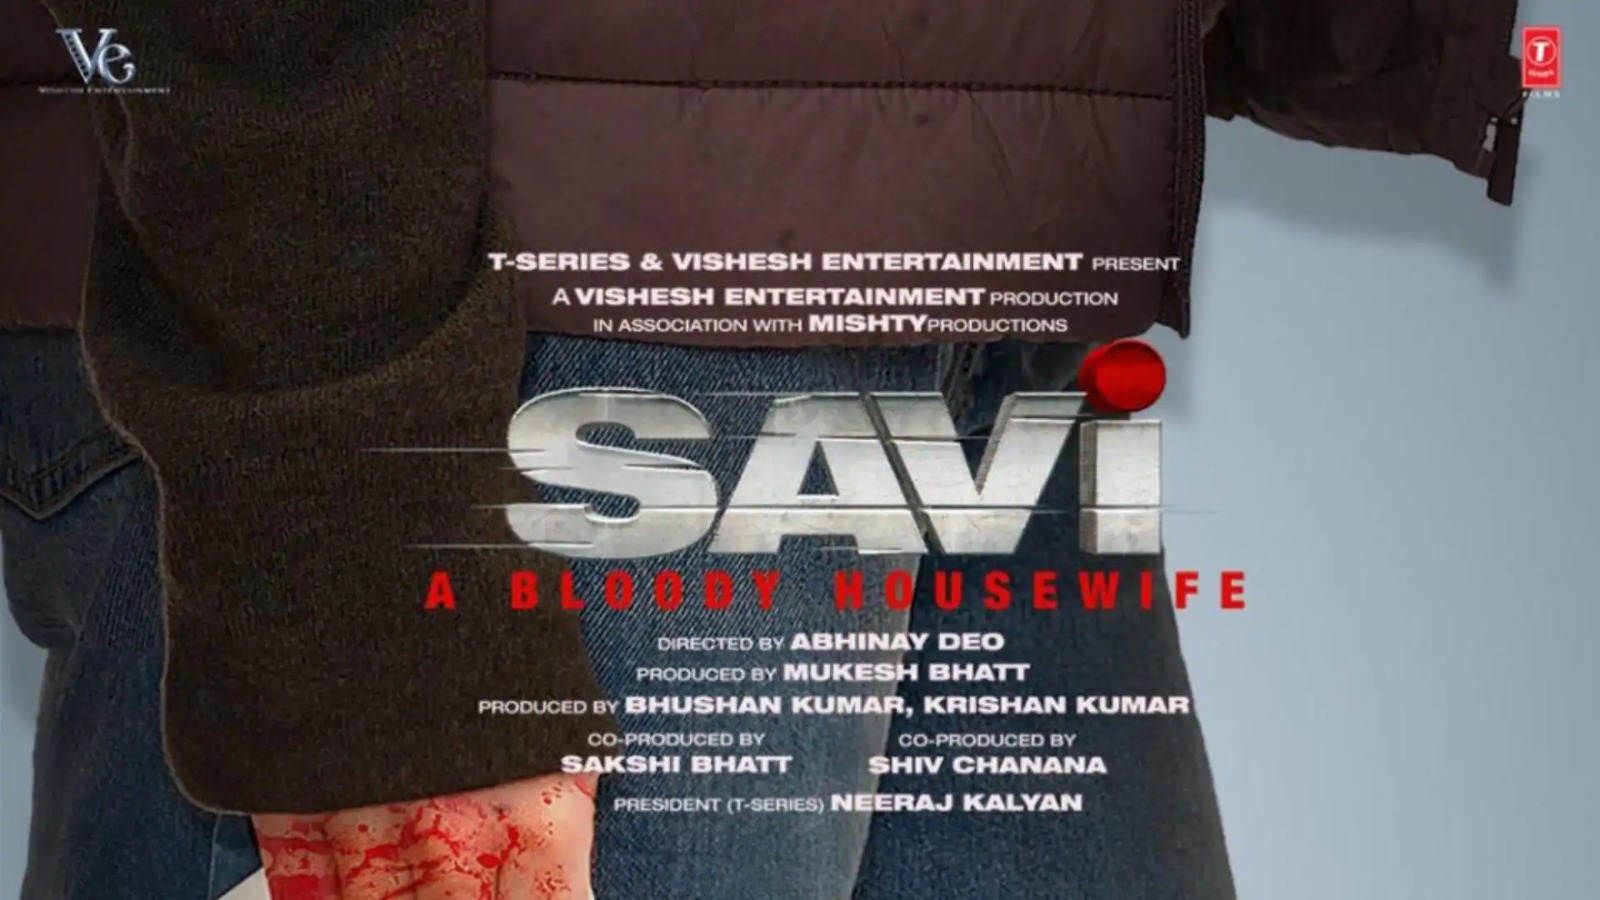 Teaser release: दिव्या खोसला की फिल्म ‘सावी- ए ब्लडी हाउसवाइफ’ का तीसरा टीजर रिलीज